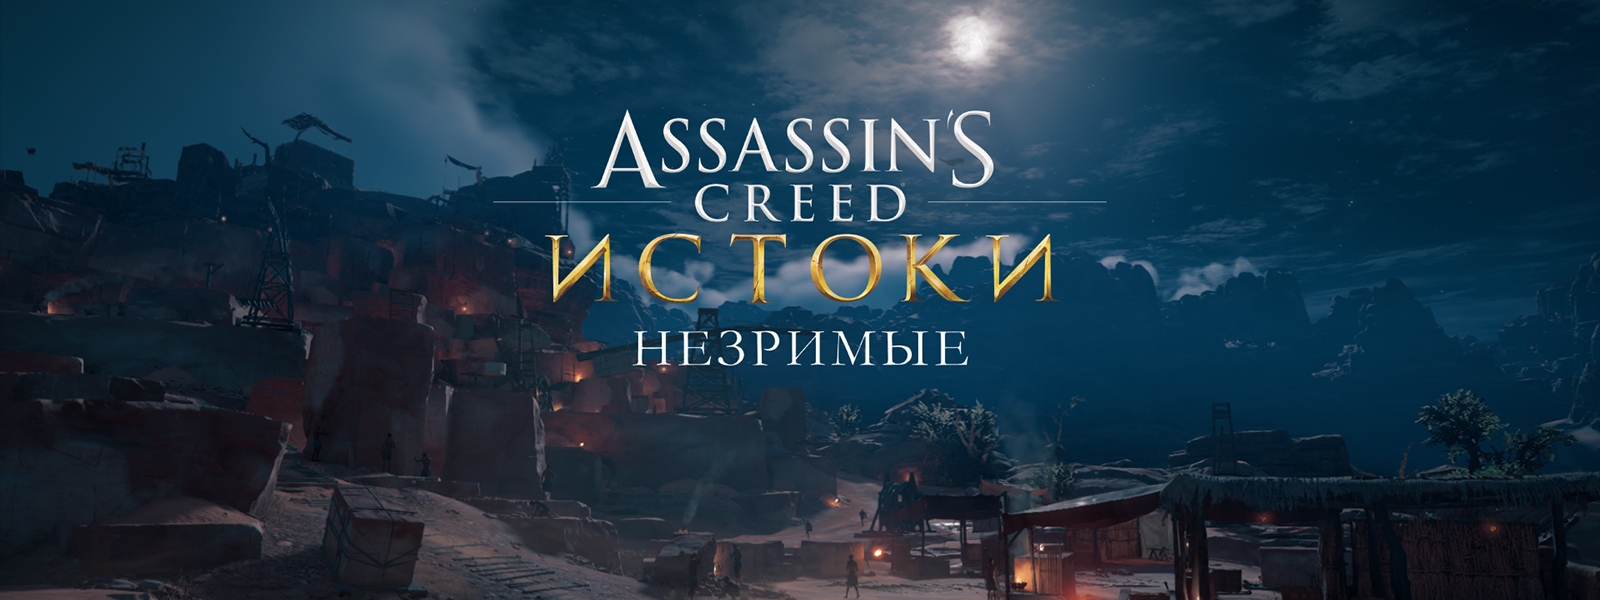 Assassins Creed Origins Незримые: все загадки папирусов